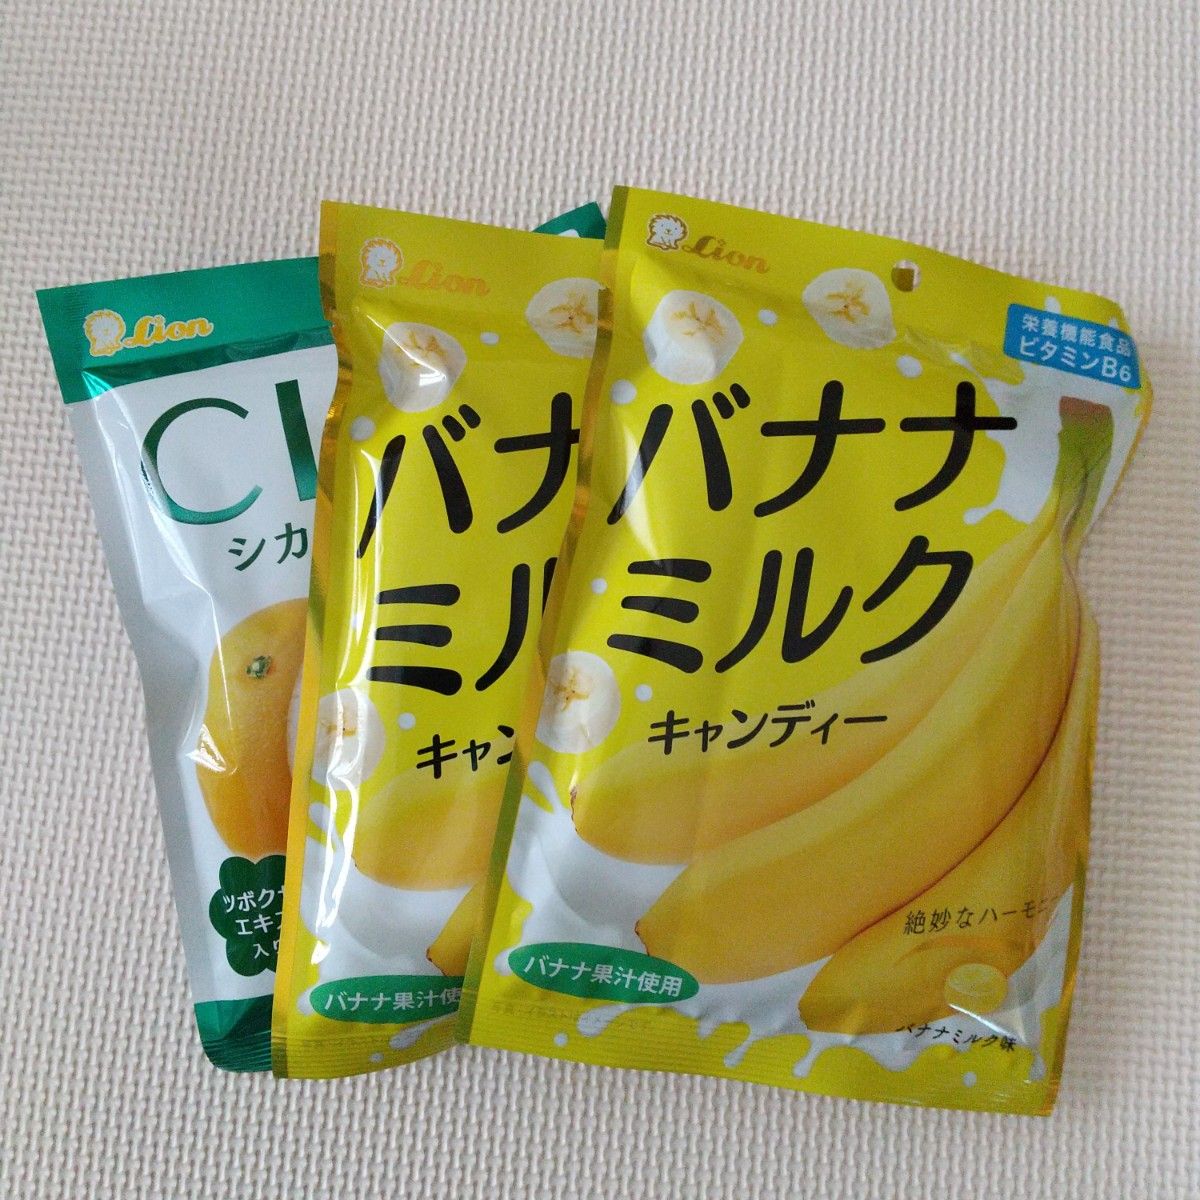 バナナキャンディー  2袋  /  CICAキャンディー  1袋